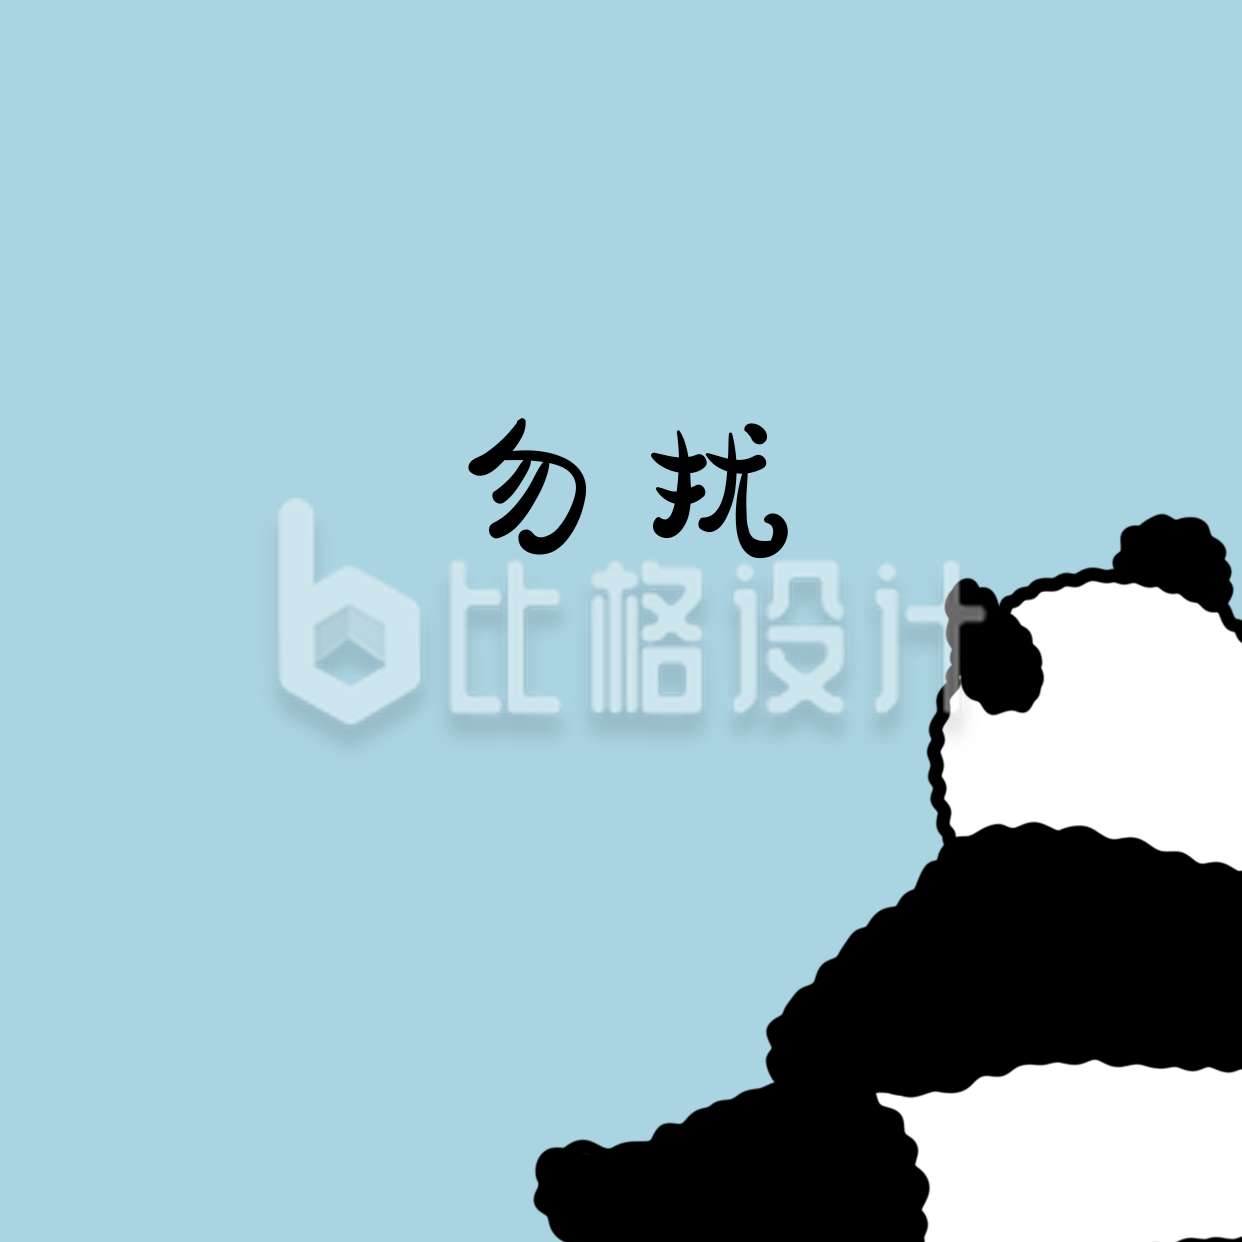 勿扰可爱大熊猫卡通手绘创意趣味头像